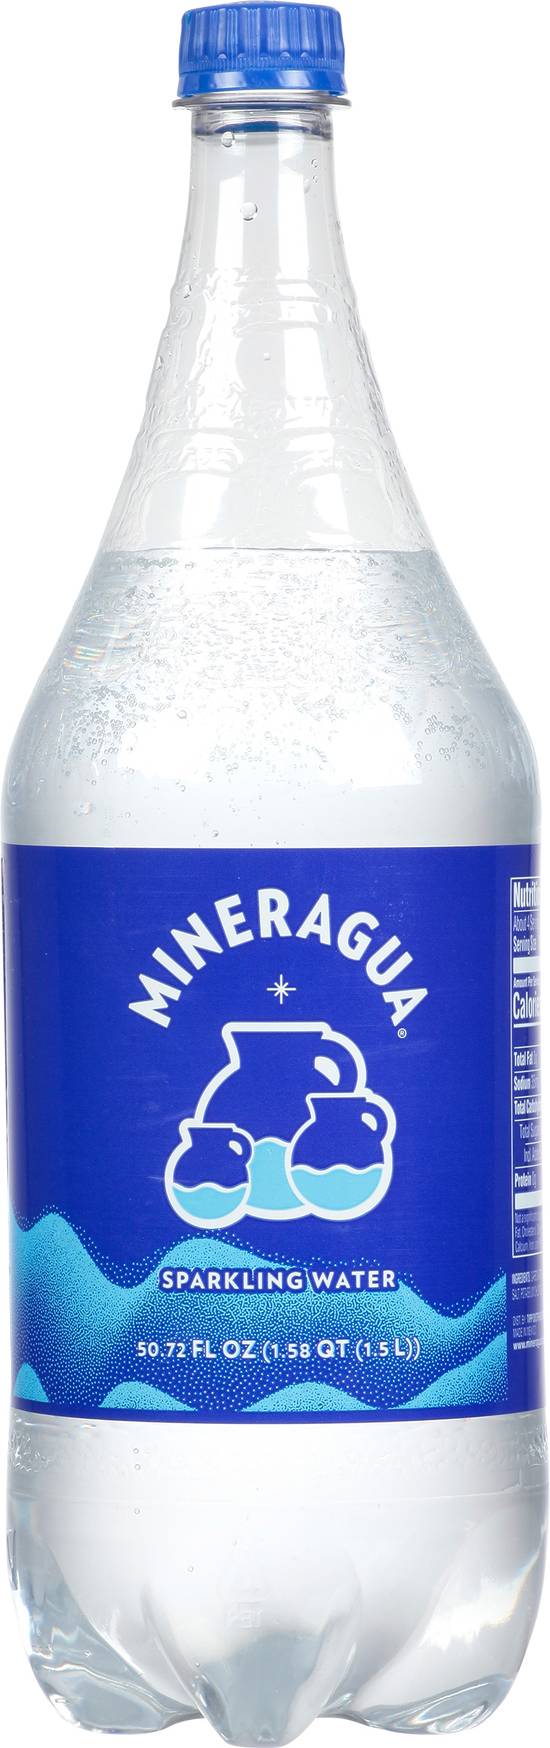 Mineragua Sparkling Water (50.72 fl oz)